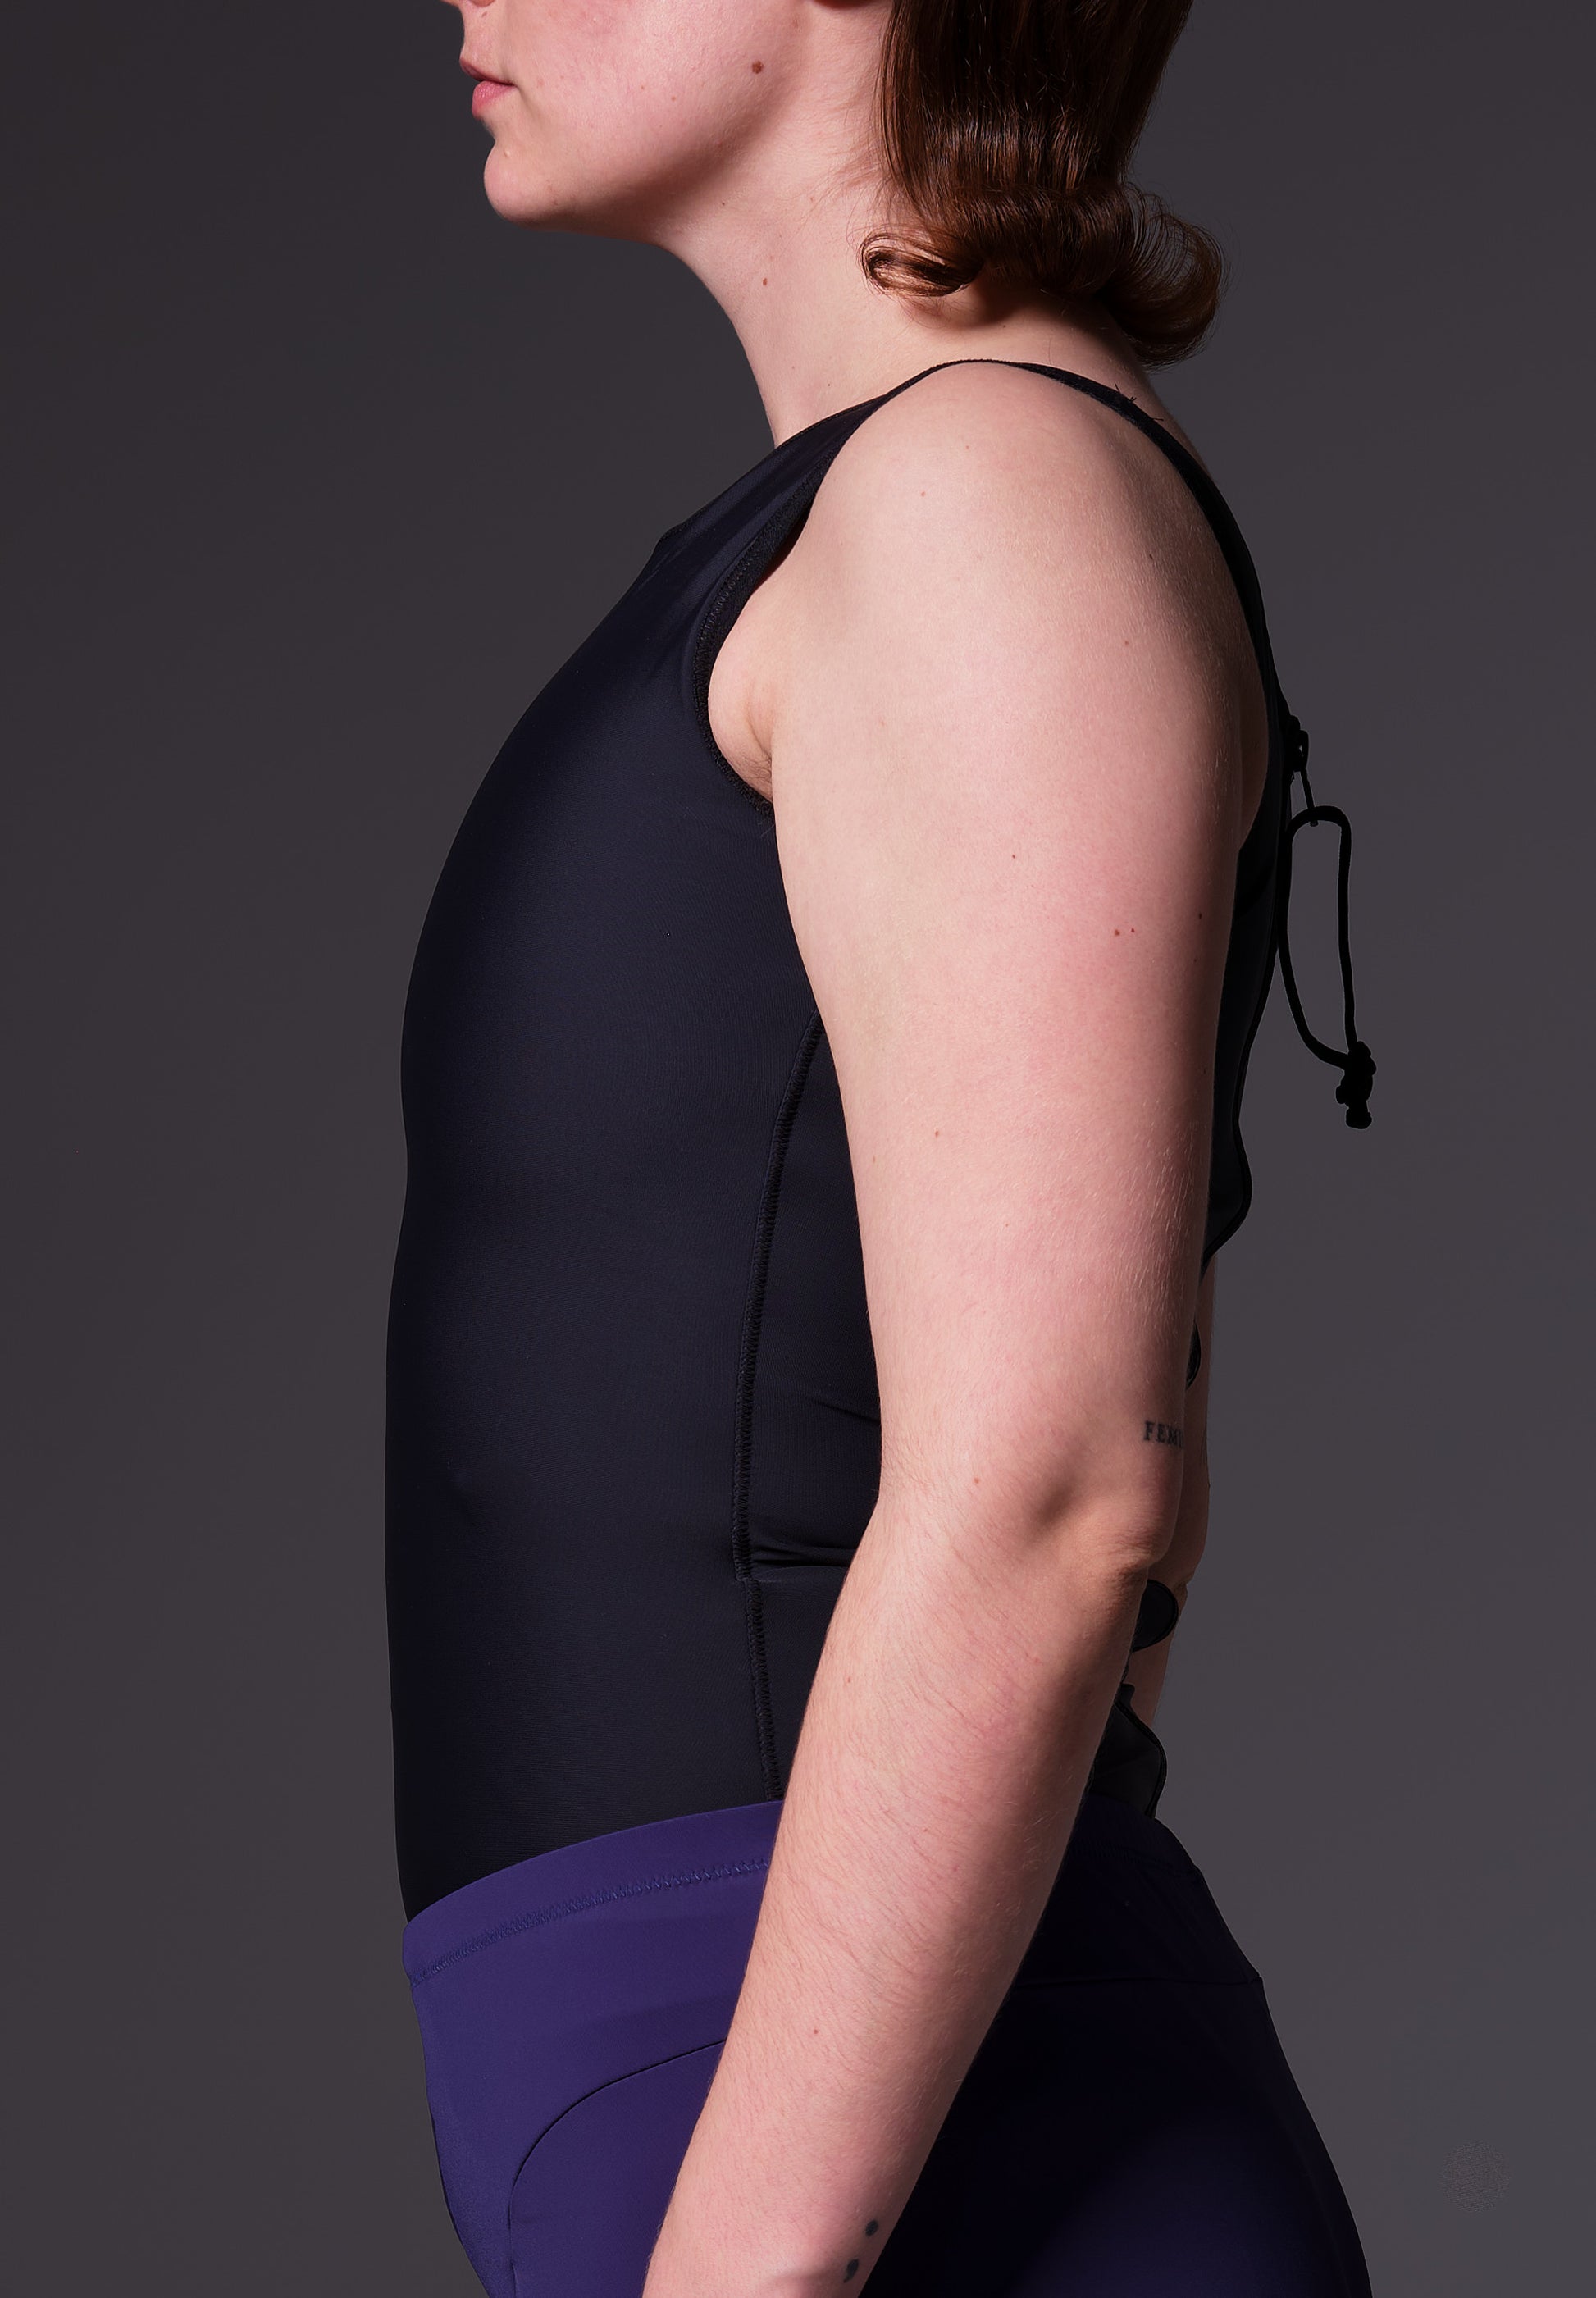 Model Lene is wearing the Swimtop Binder black, seen from the side